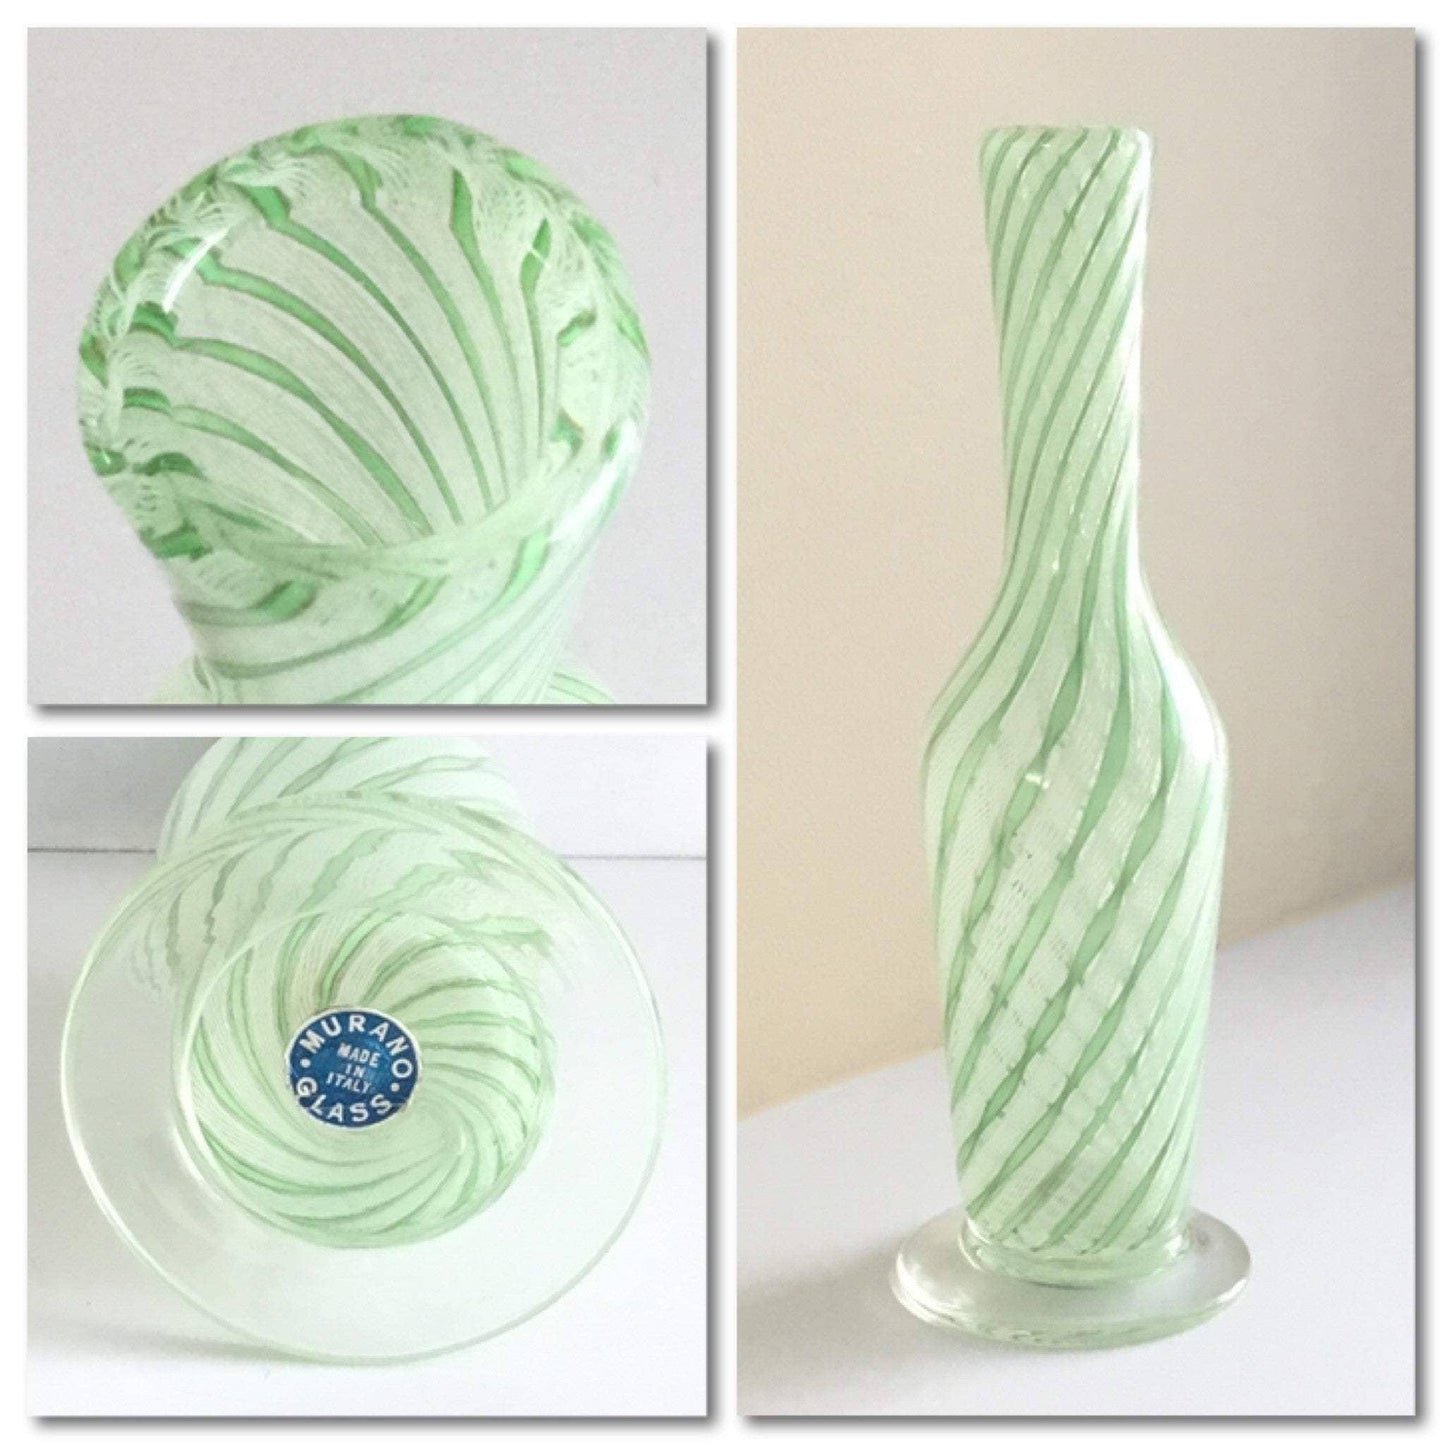 Murano glass vintage bud bottle vase